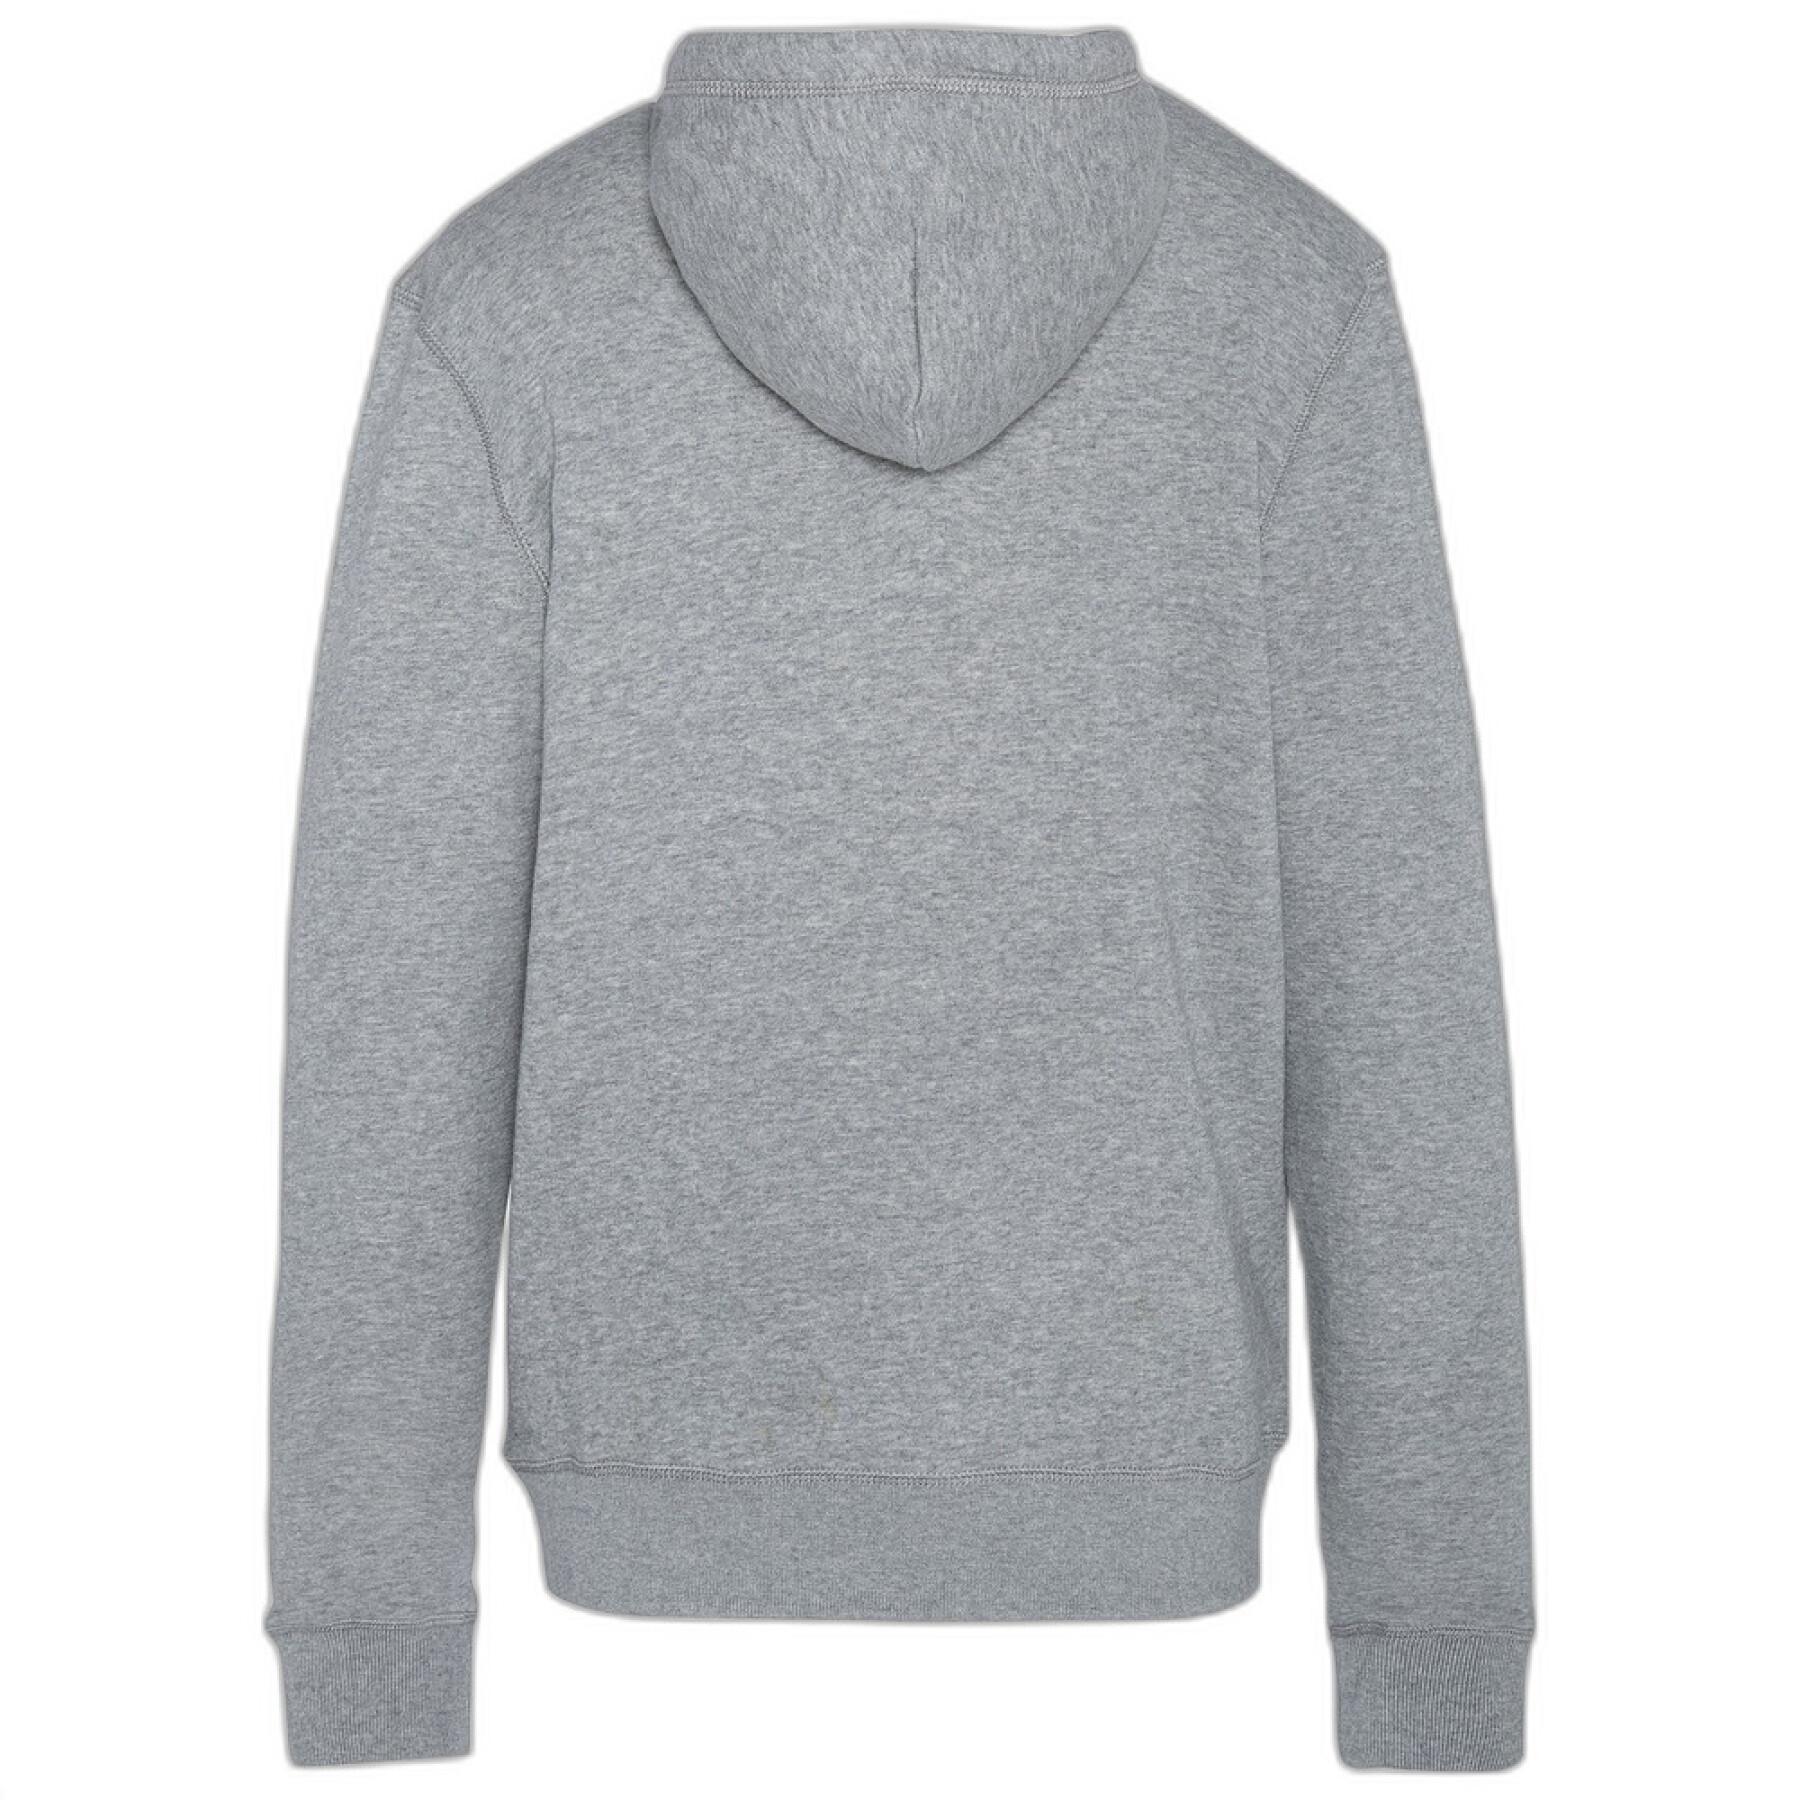 Long sleeve hooded sweatshirt + logo zip Schott